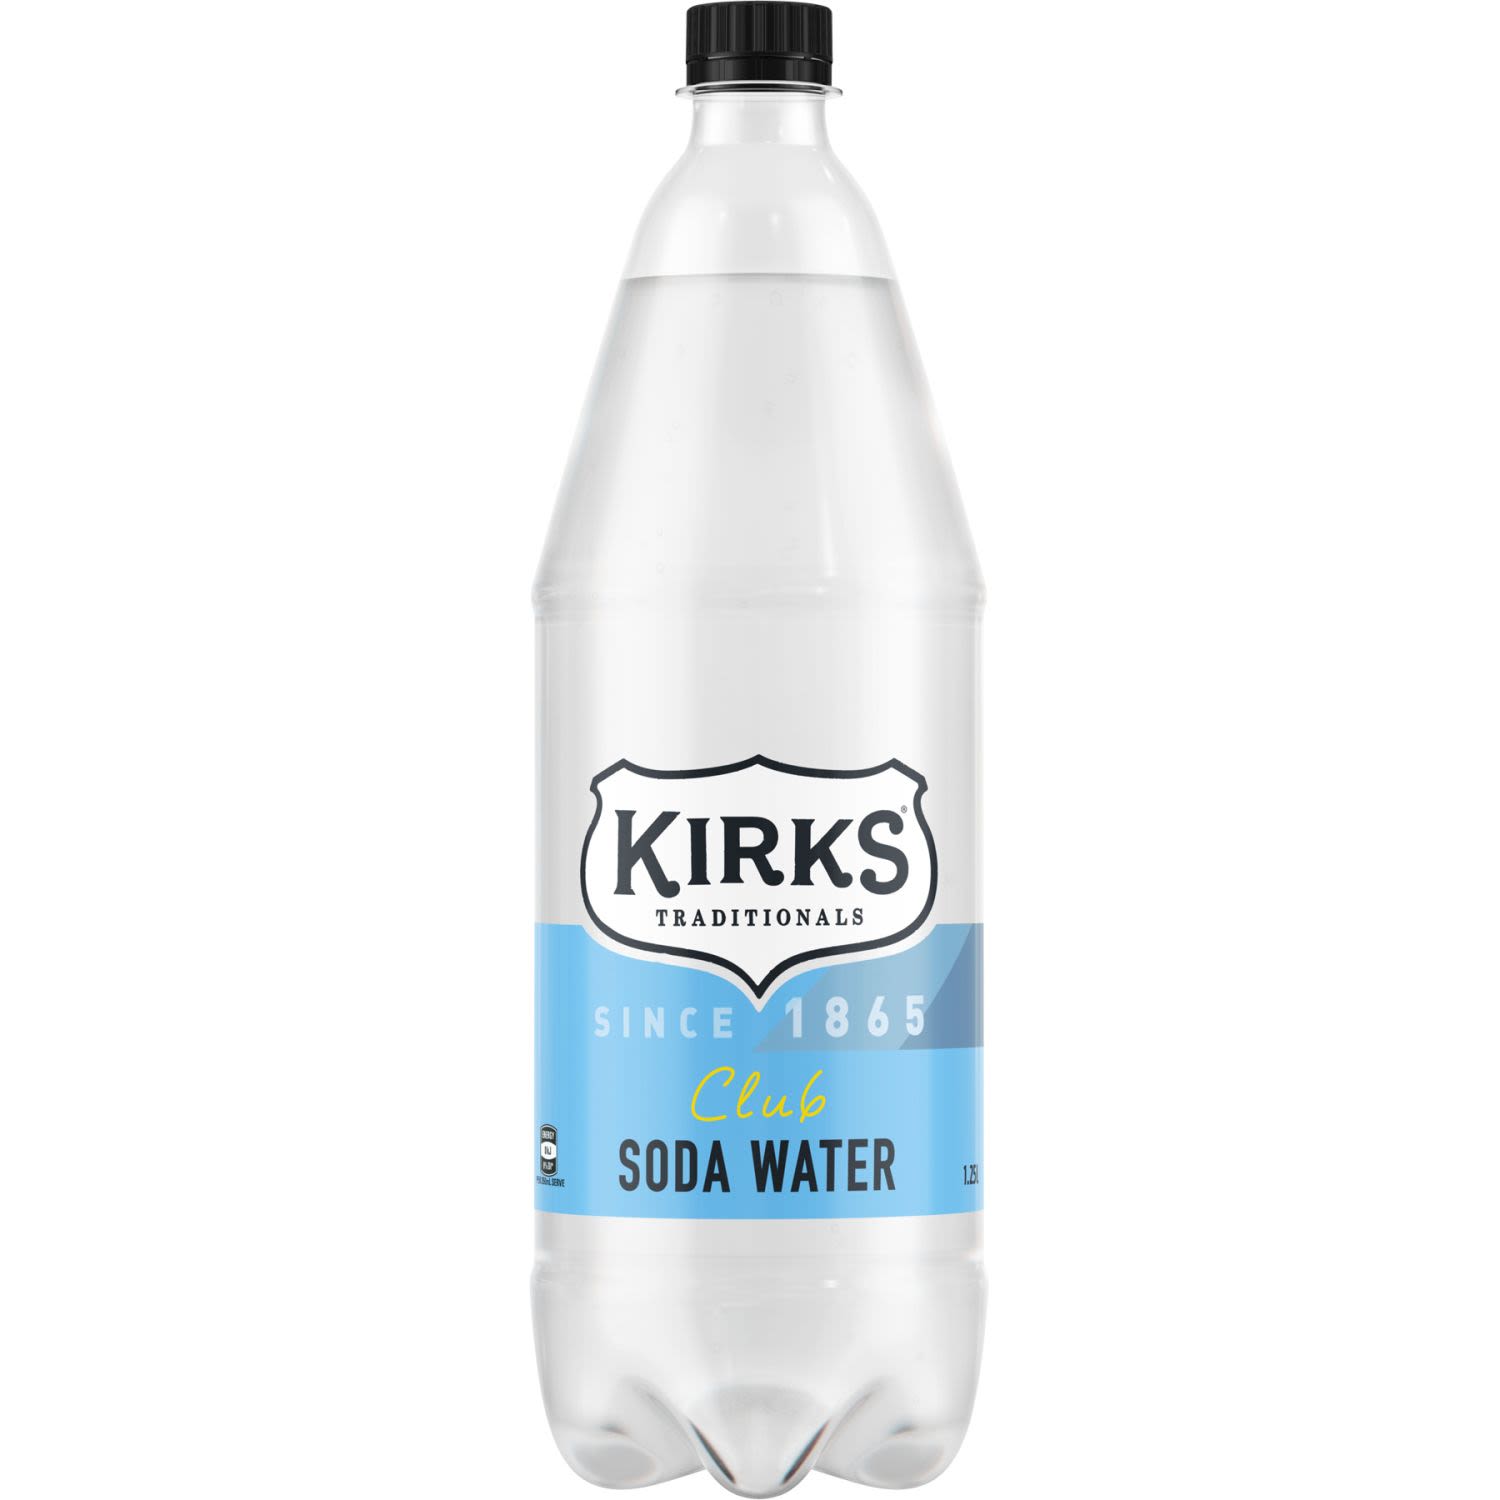 Kirks Club Soda Water Bottle, 1.25 Litre